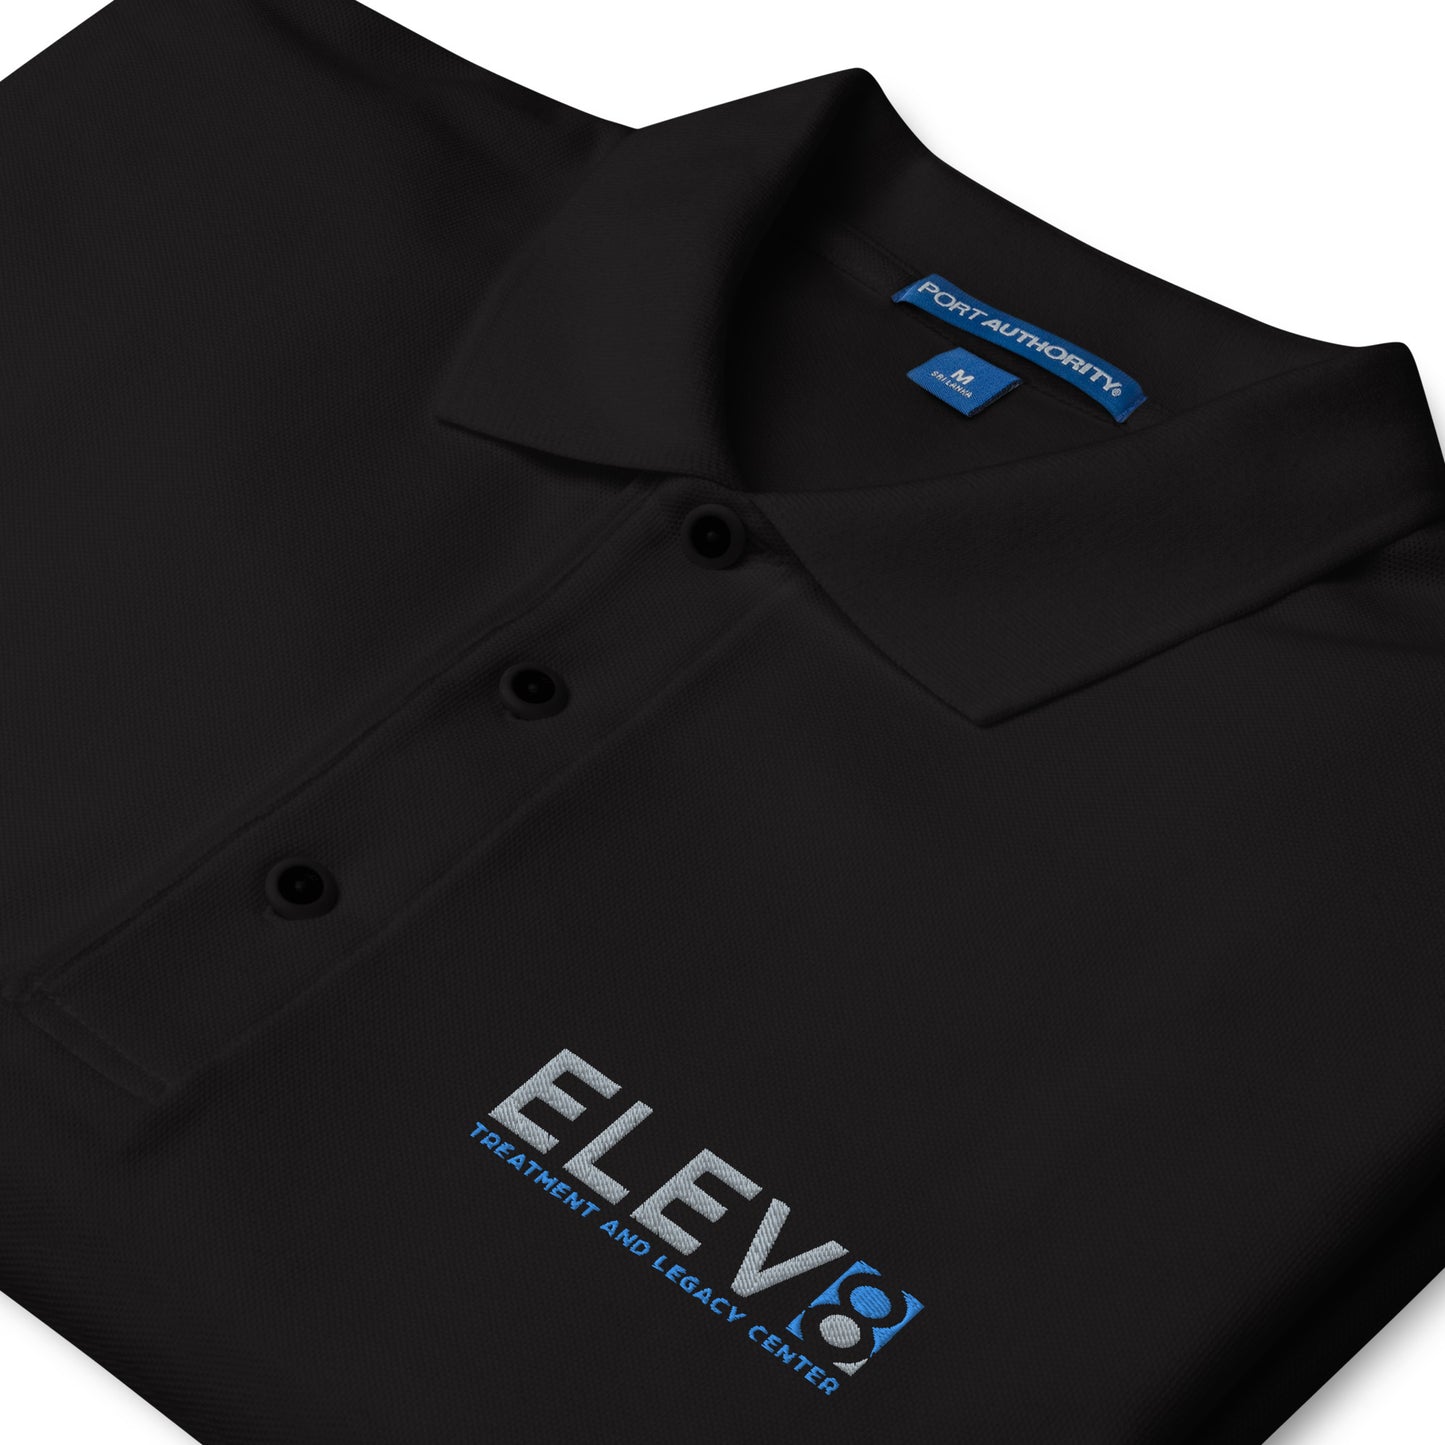 Elev8 Men's Premium Polo